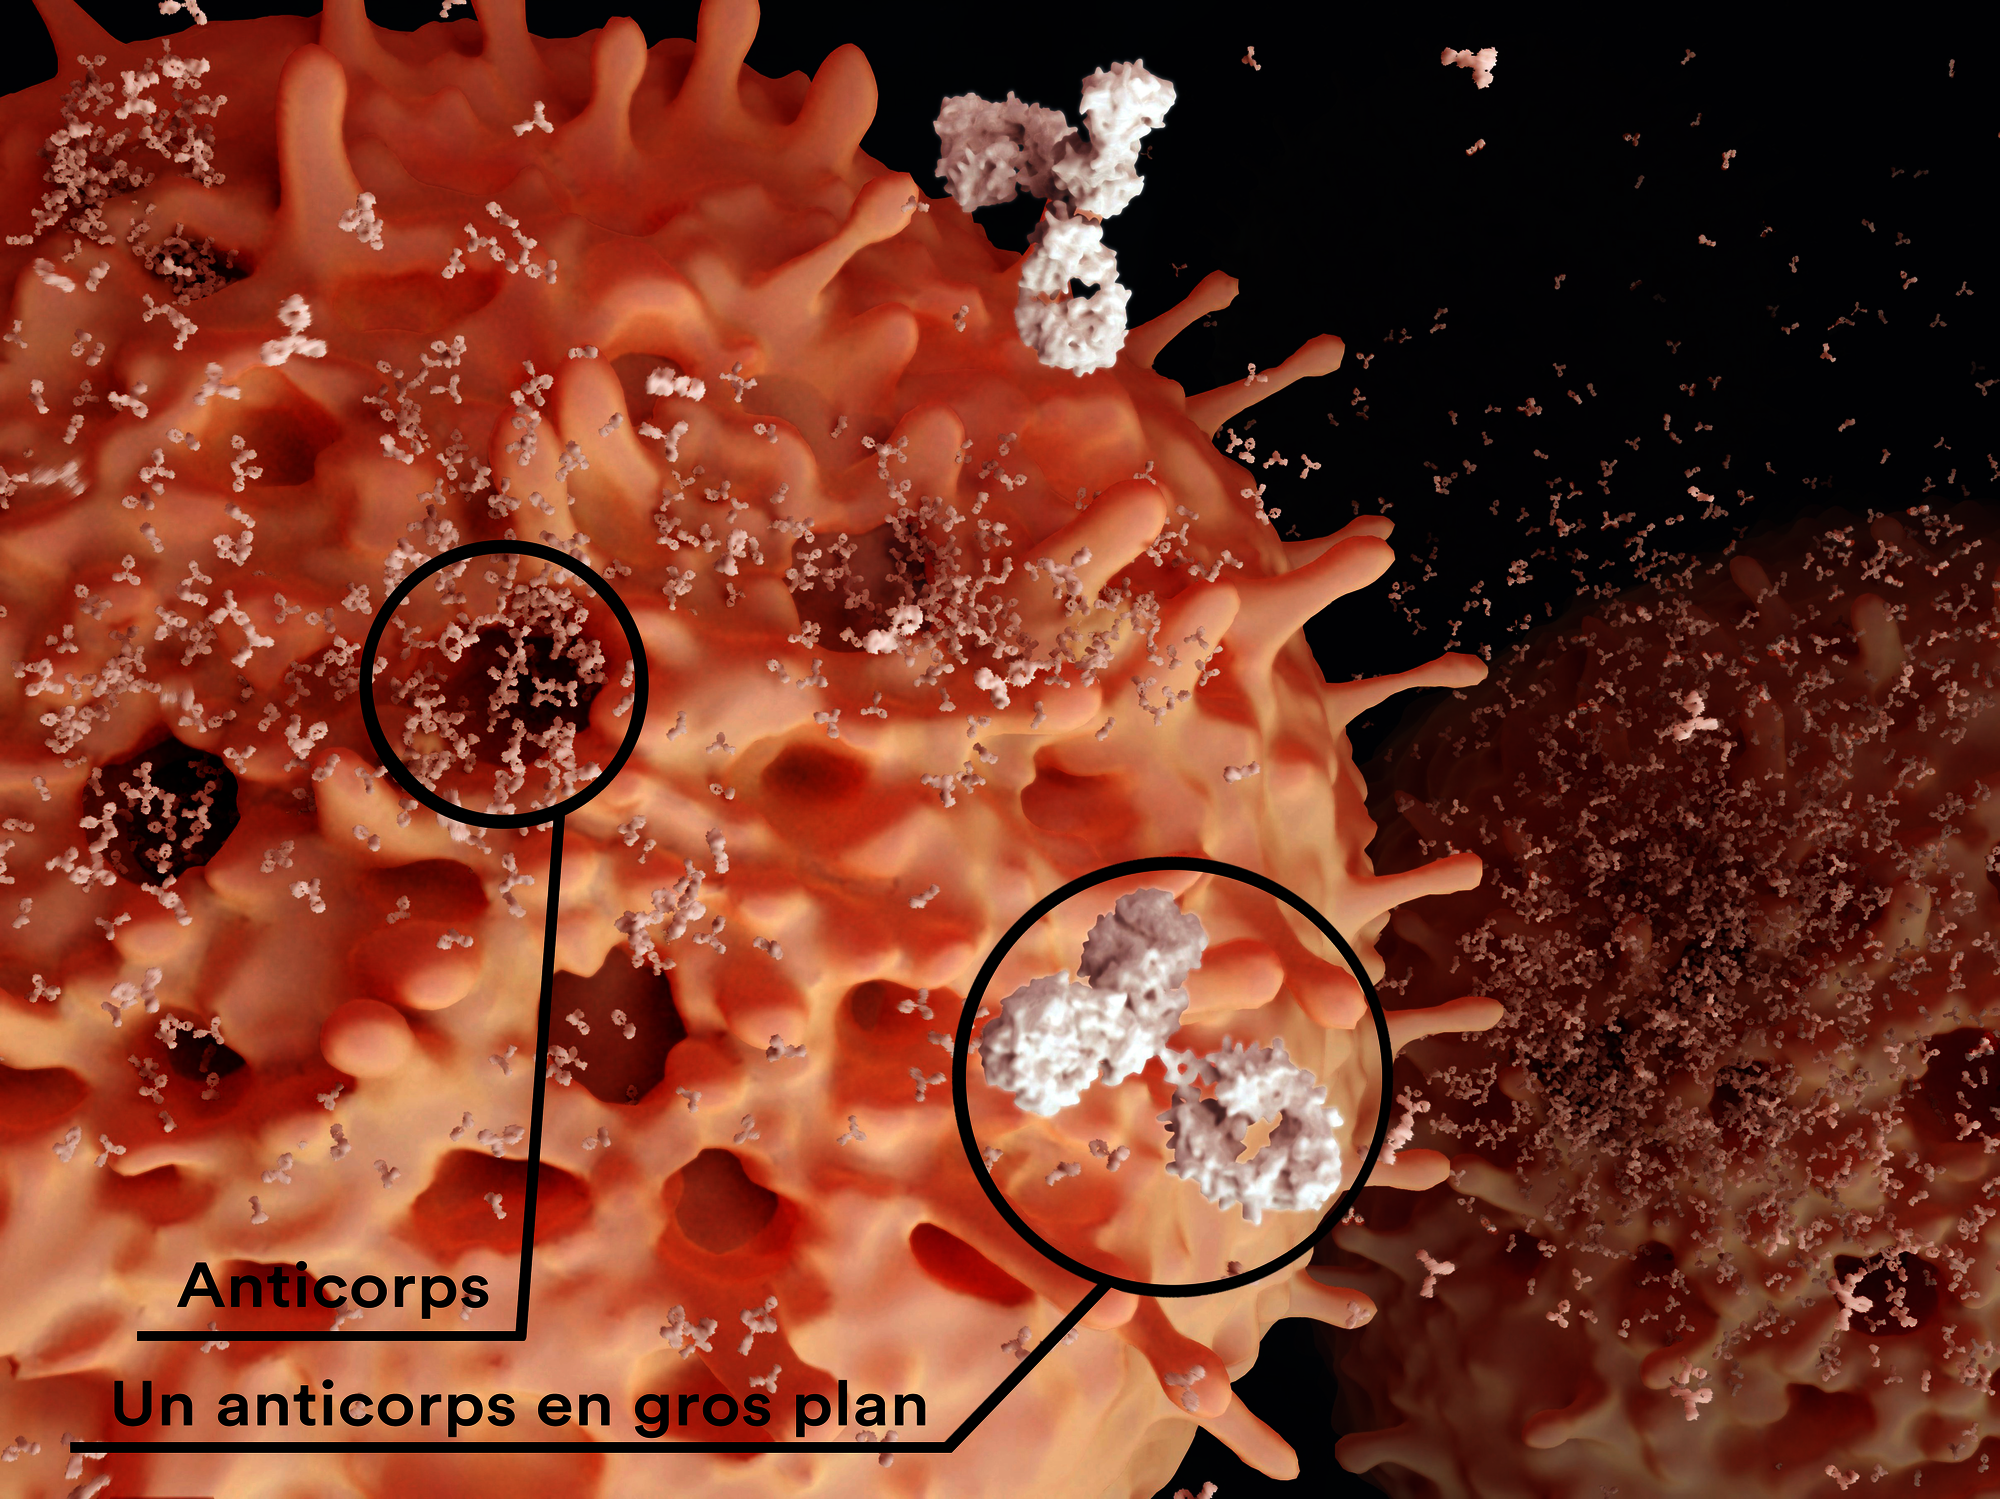 Image permettant de visualiser à quoi ressemble des anticorps en gros plan